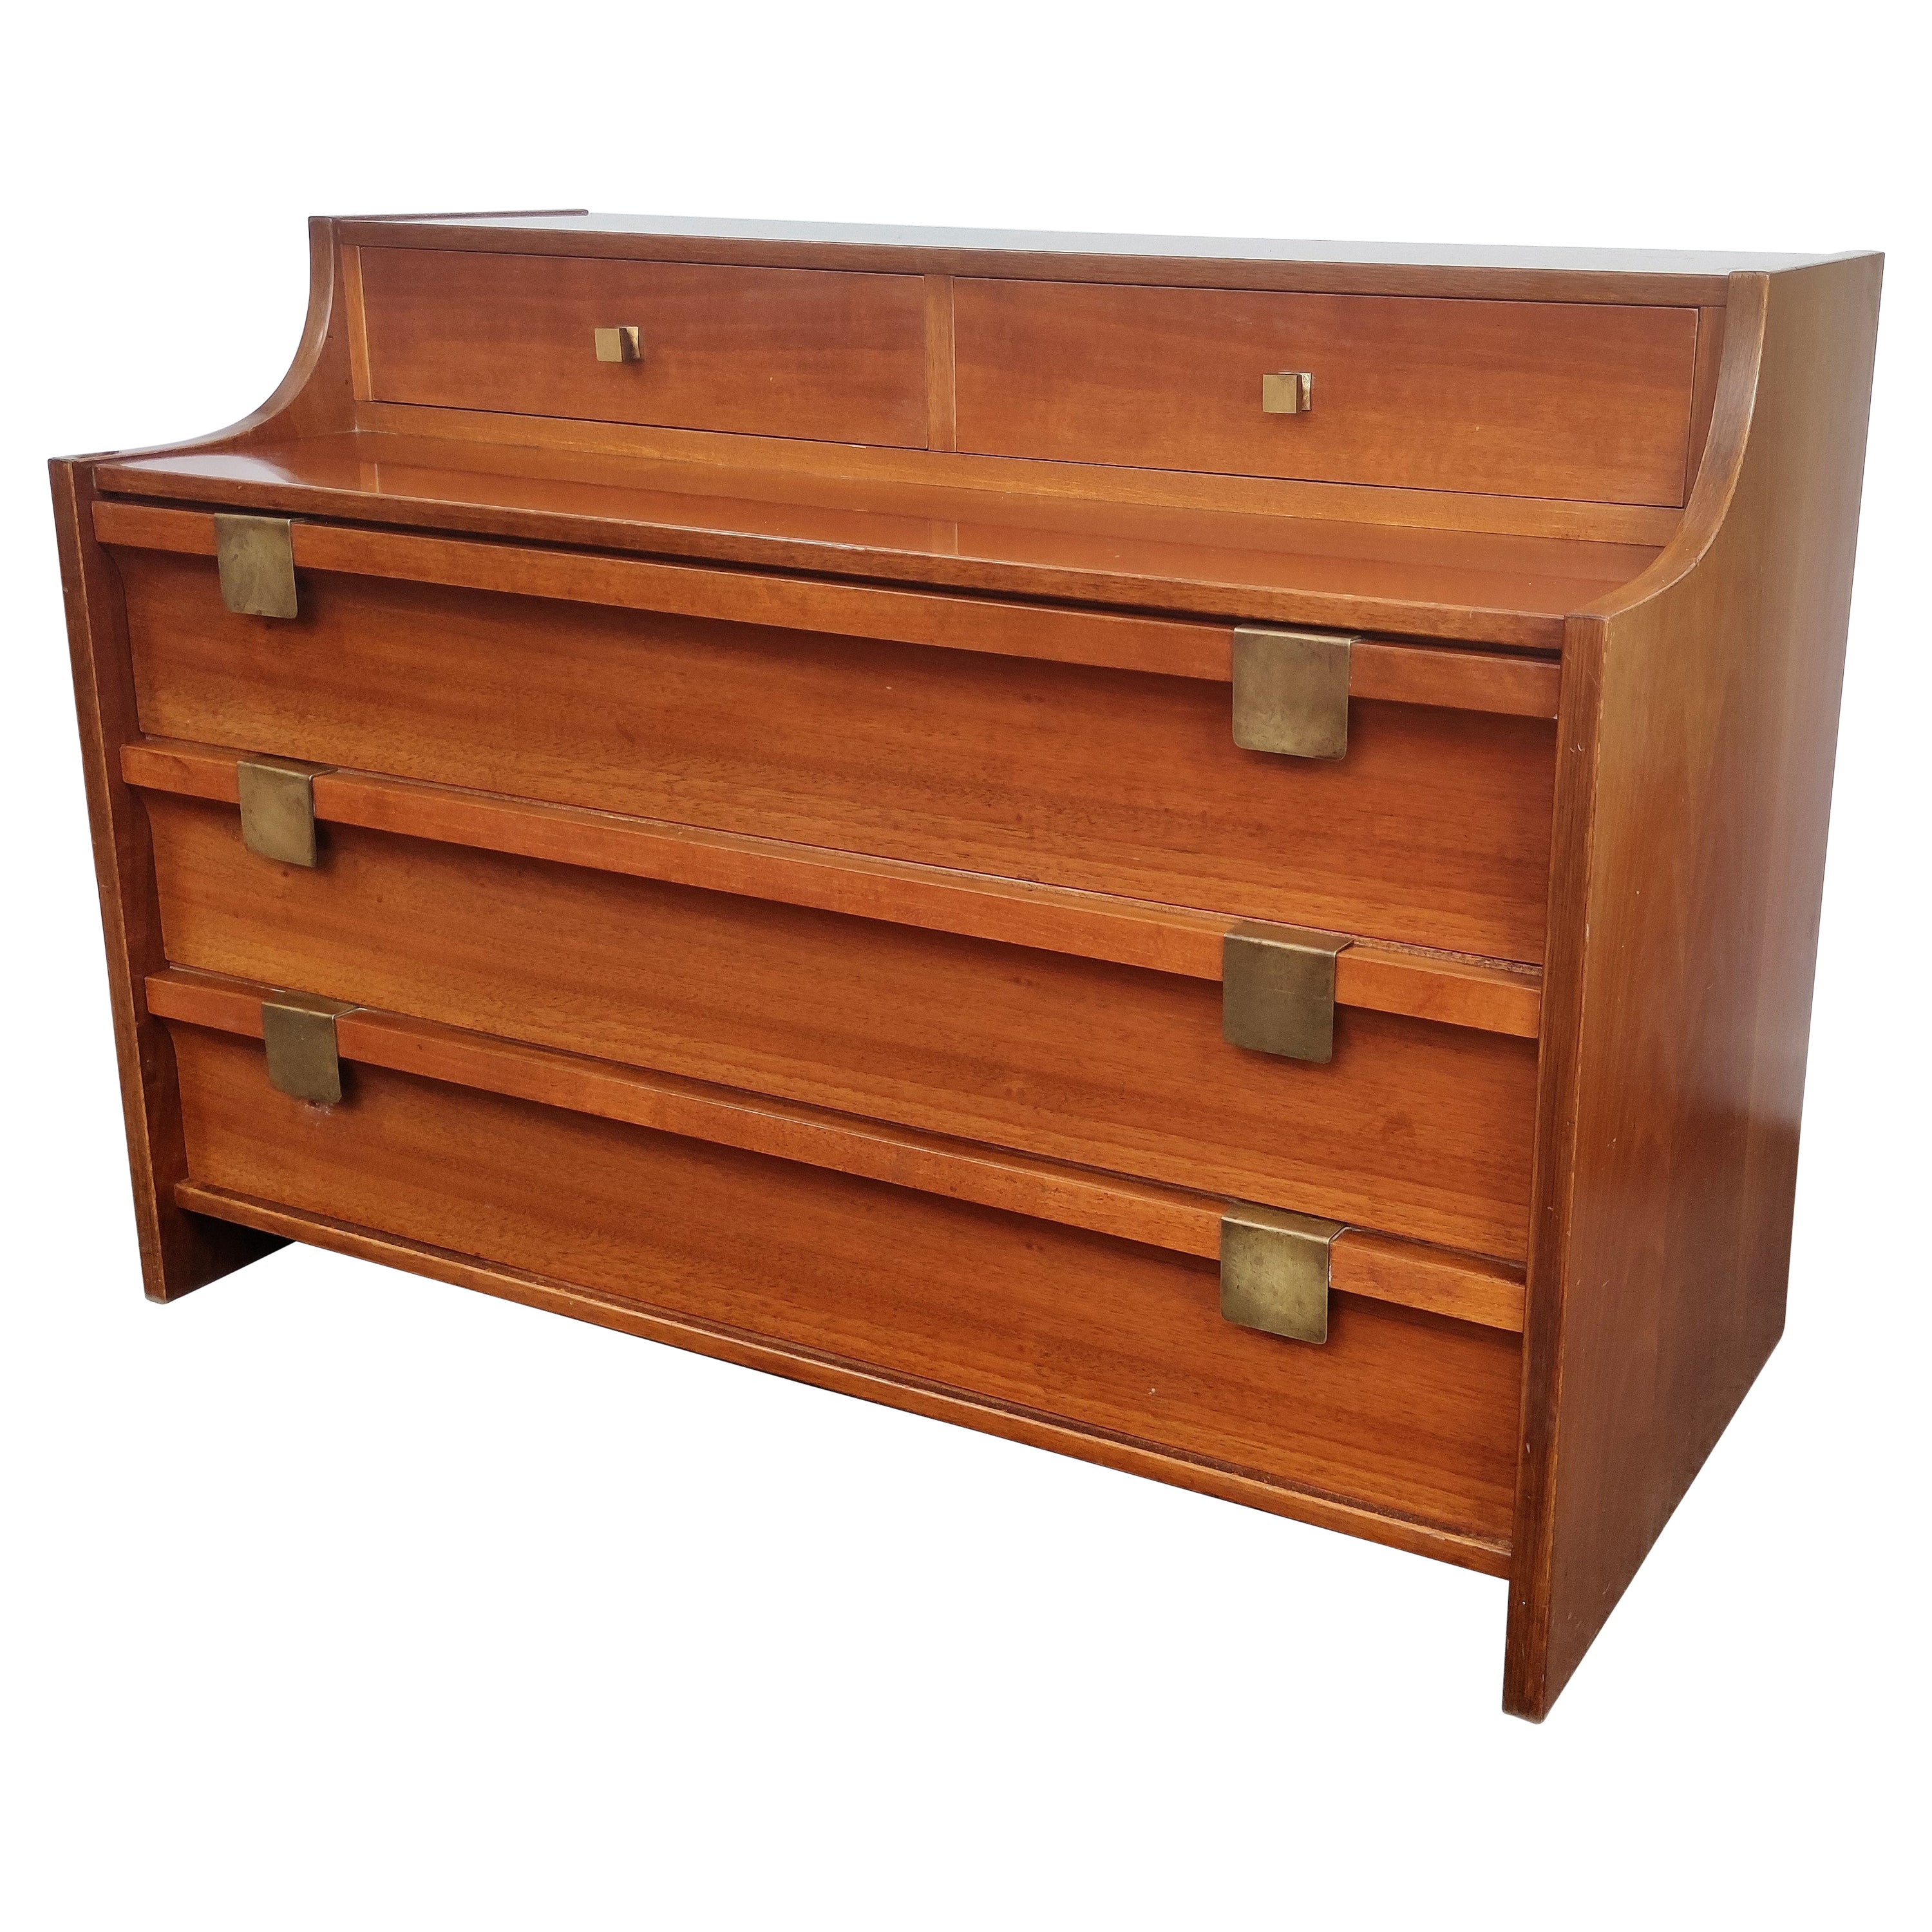 Commode en bois et laiton des années 1960 d'Italie Mid-Century Modern Dresser Chest of Drawers